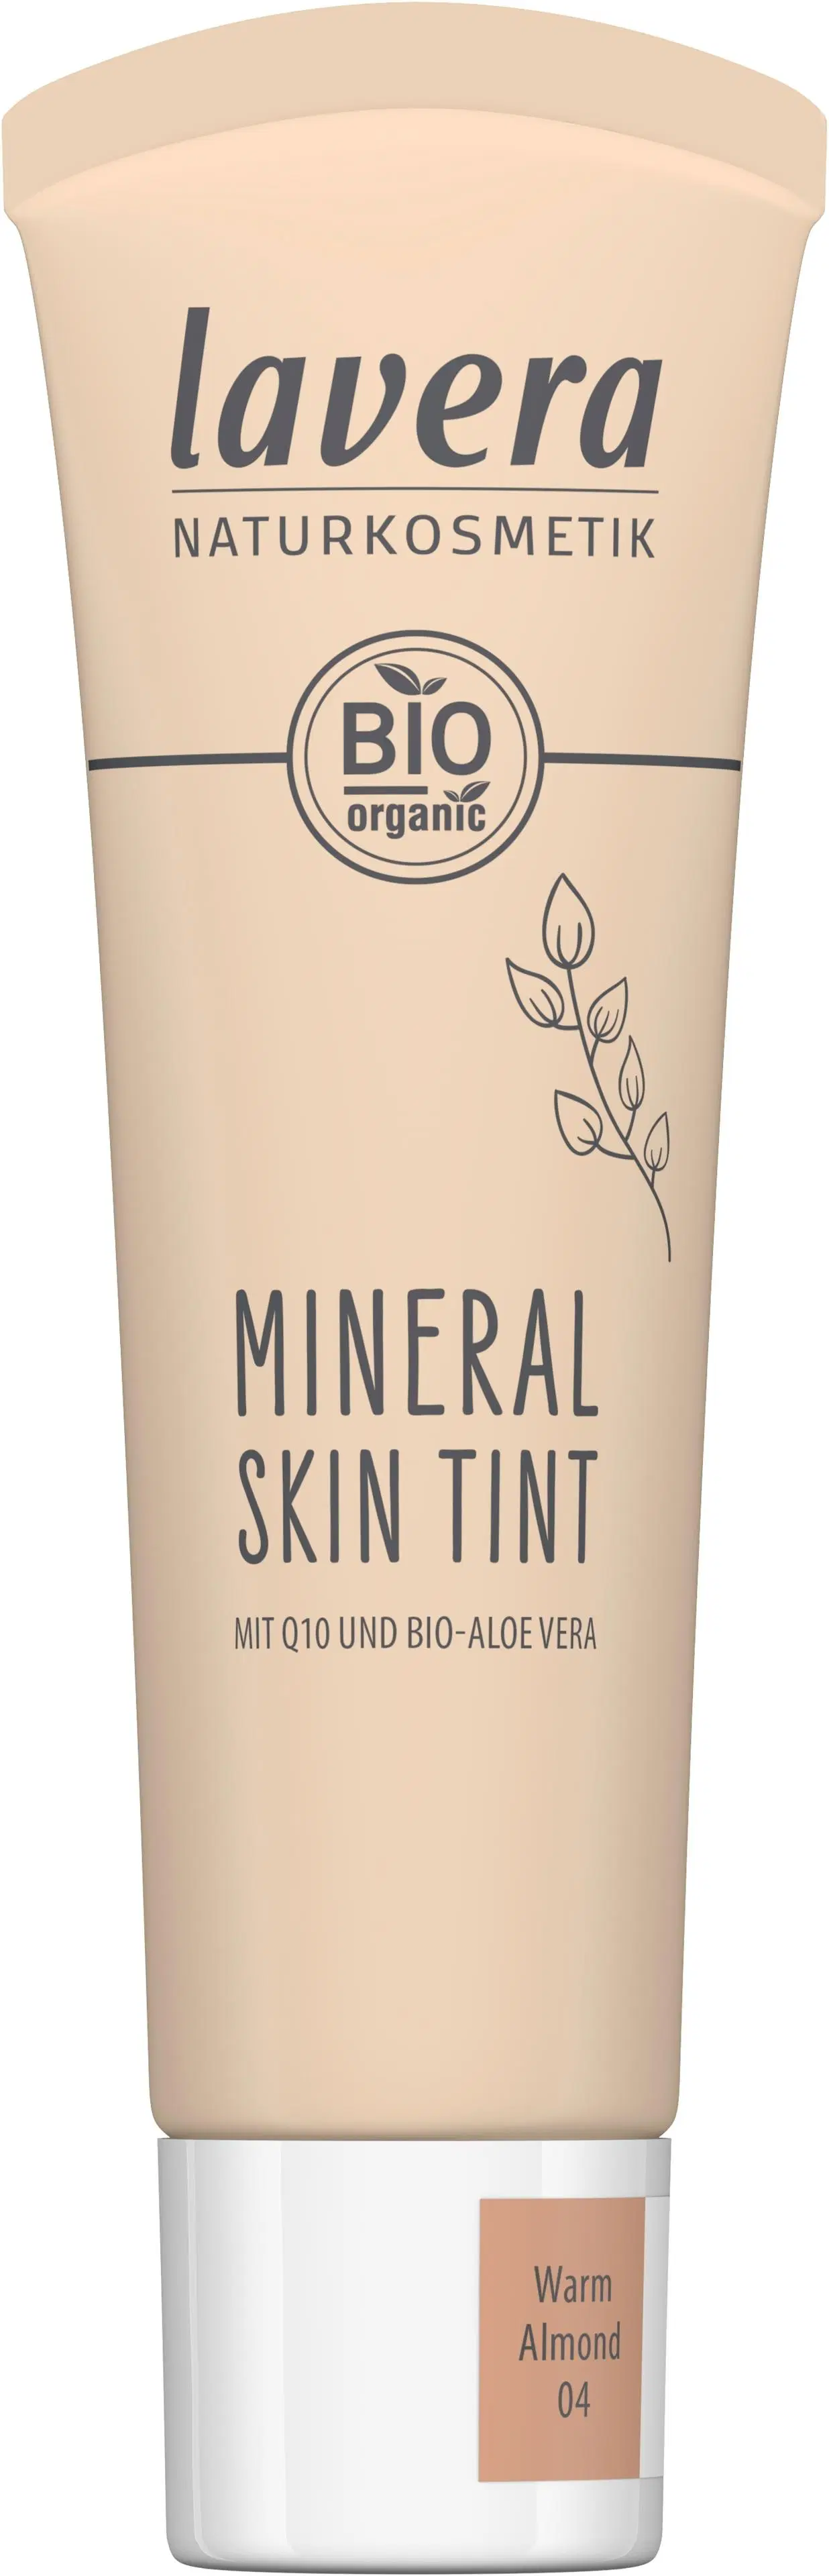 lavera Mineral Skin Tint -Warm Almond 04- 30 ml